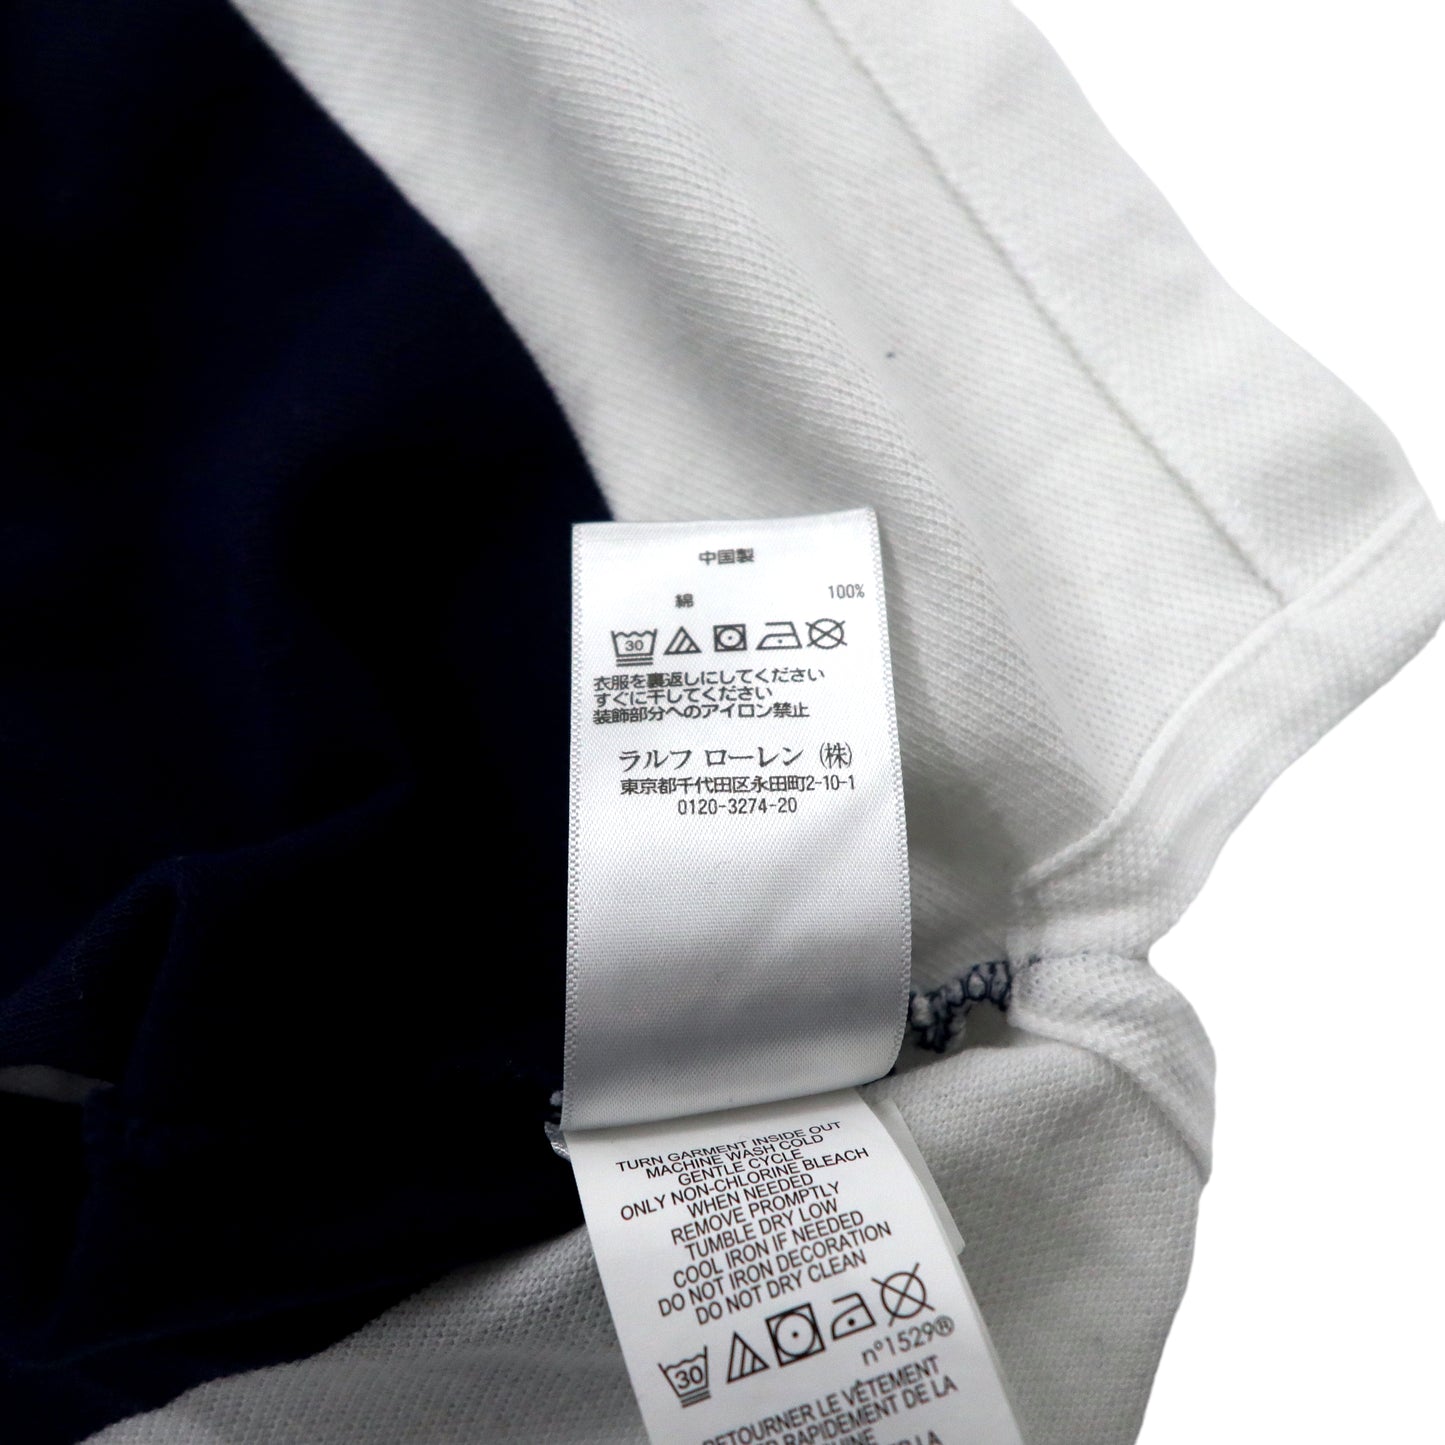 POLO RALPH LAUREN ポロシャツ S ネイビー ホワイト ボーダー USA ポニー刺繍 ナンバリング CUSTOM SLIM FIT